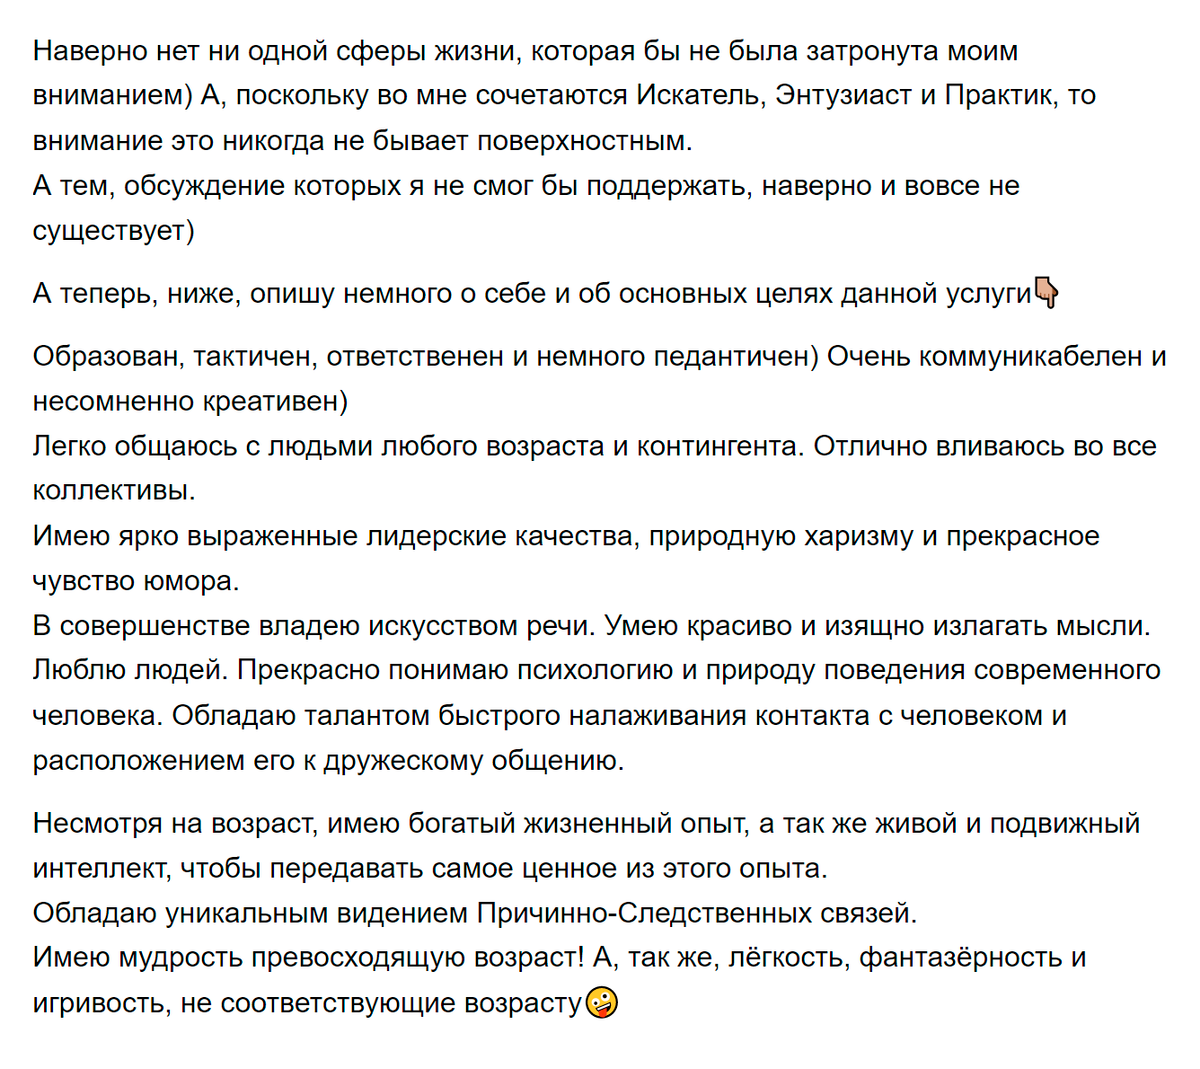 А вот часть его рассказа о себе. Источник: avito.ru